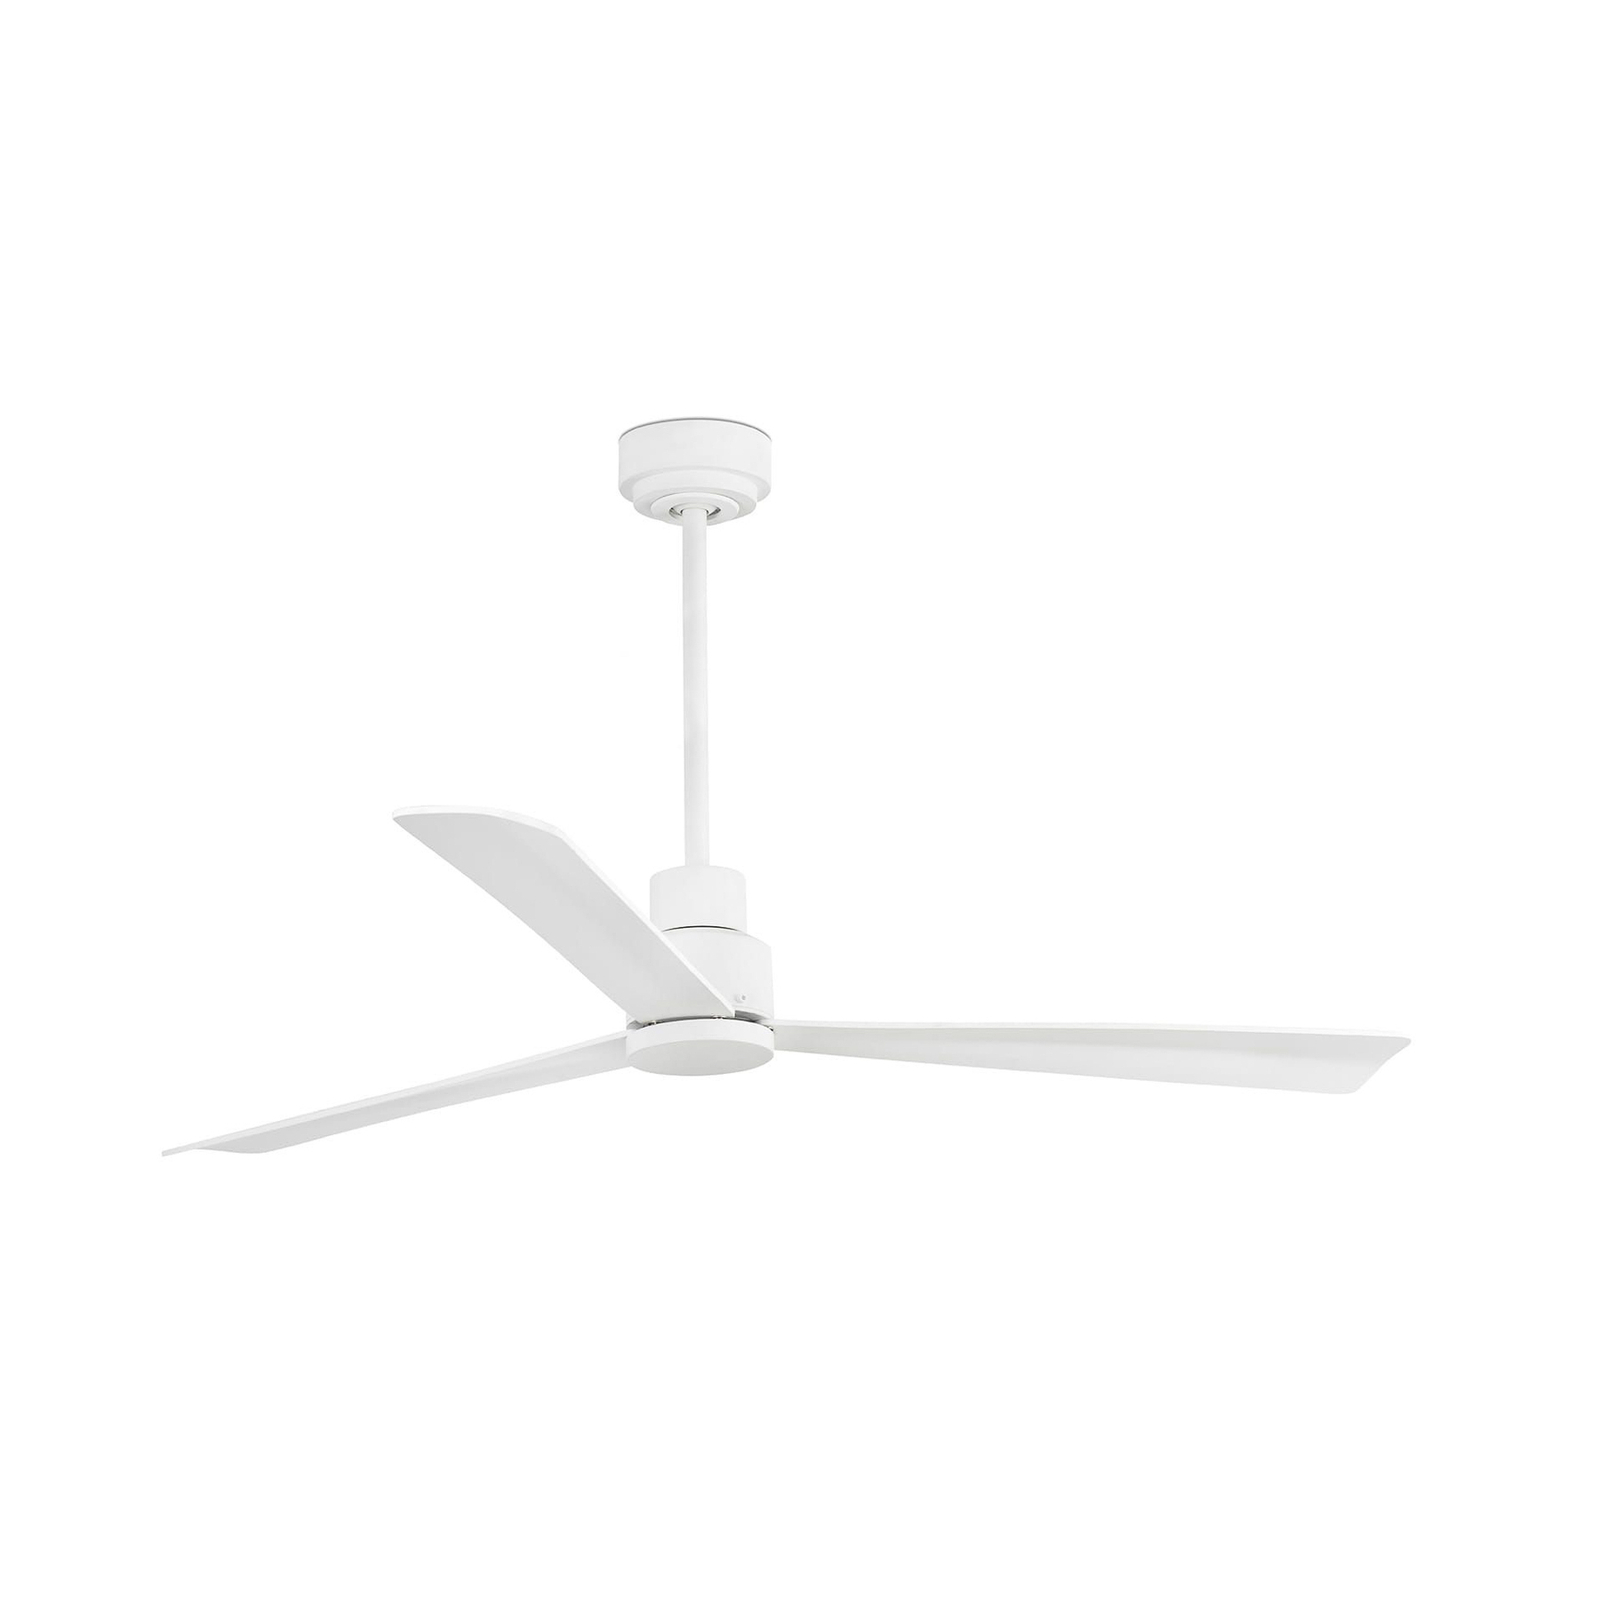 Nassau ceiling fan, 3 blades, white